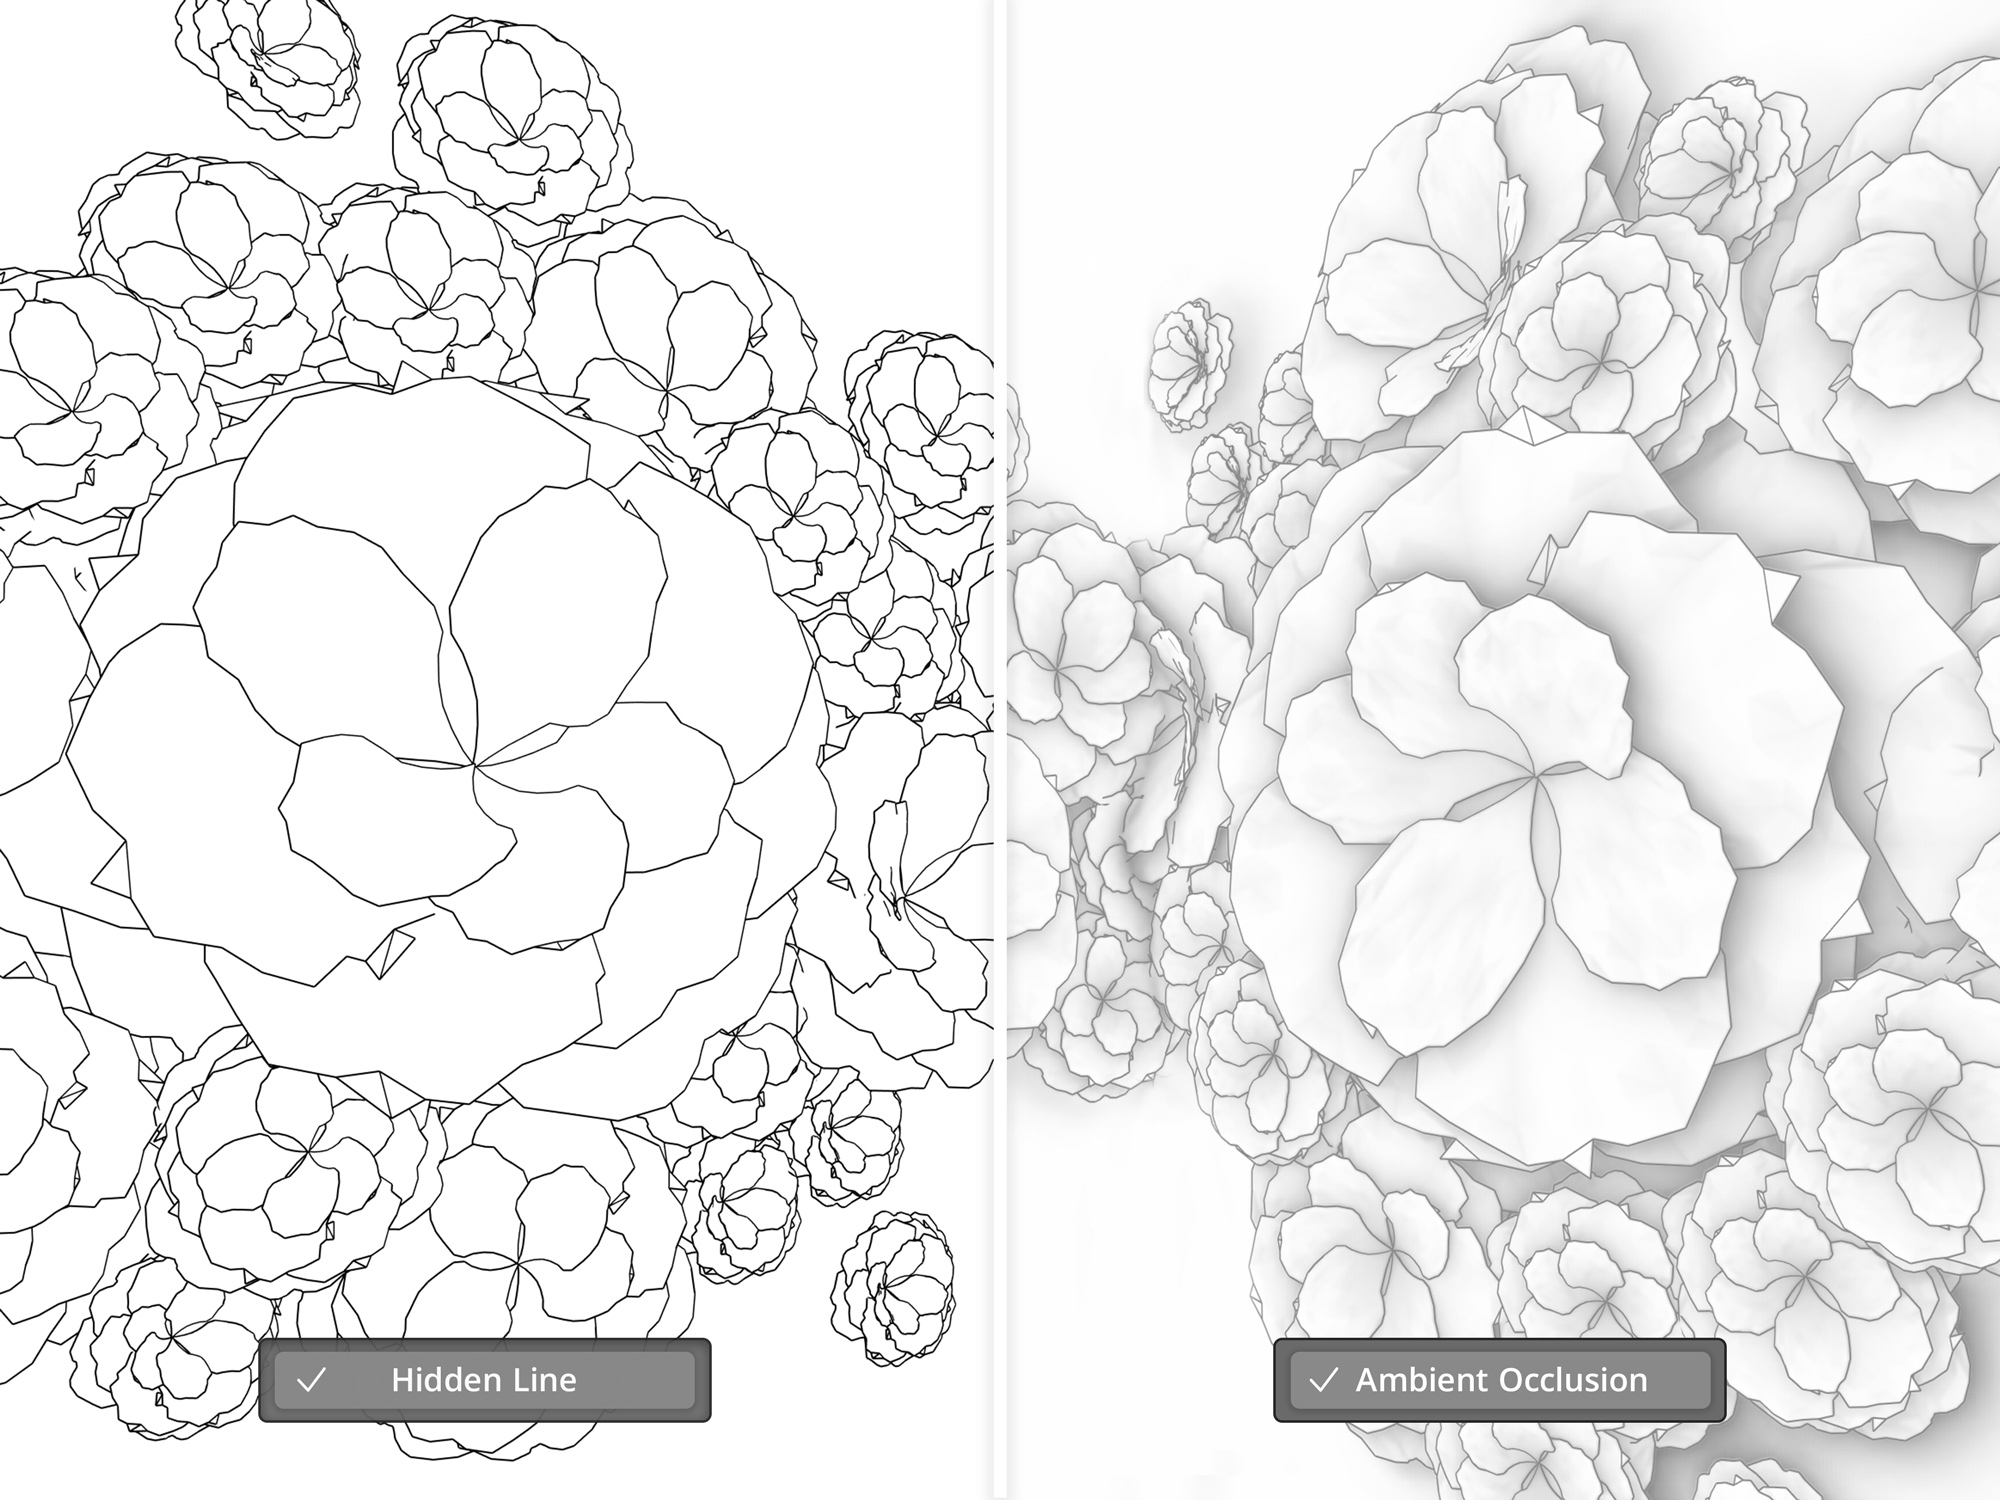 De linkerkant. van de afbeelding is een SketchUp gestileerde afbeelding van zwart witte bloemen aan de rechterkant staat dezelfde afbeelding met Ambient Occlusion